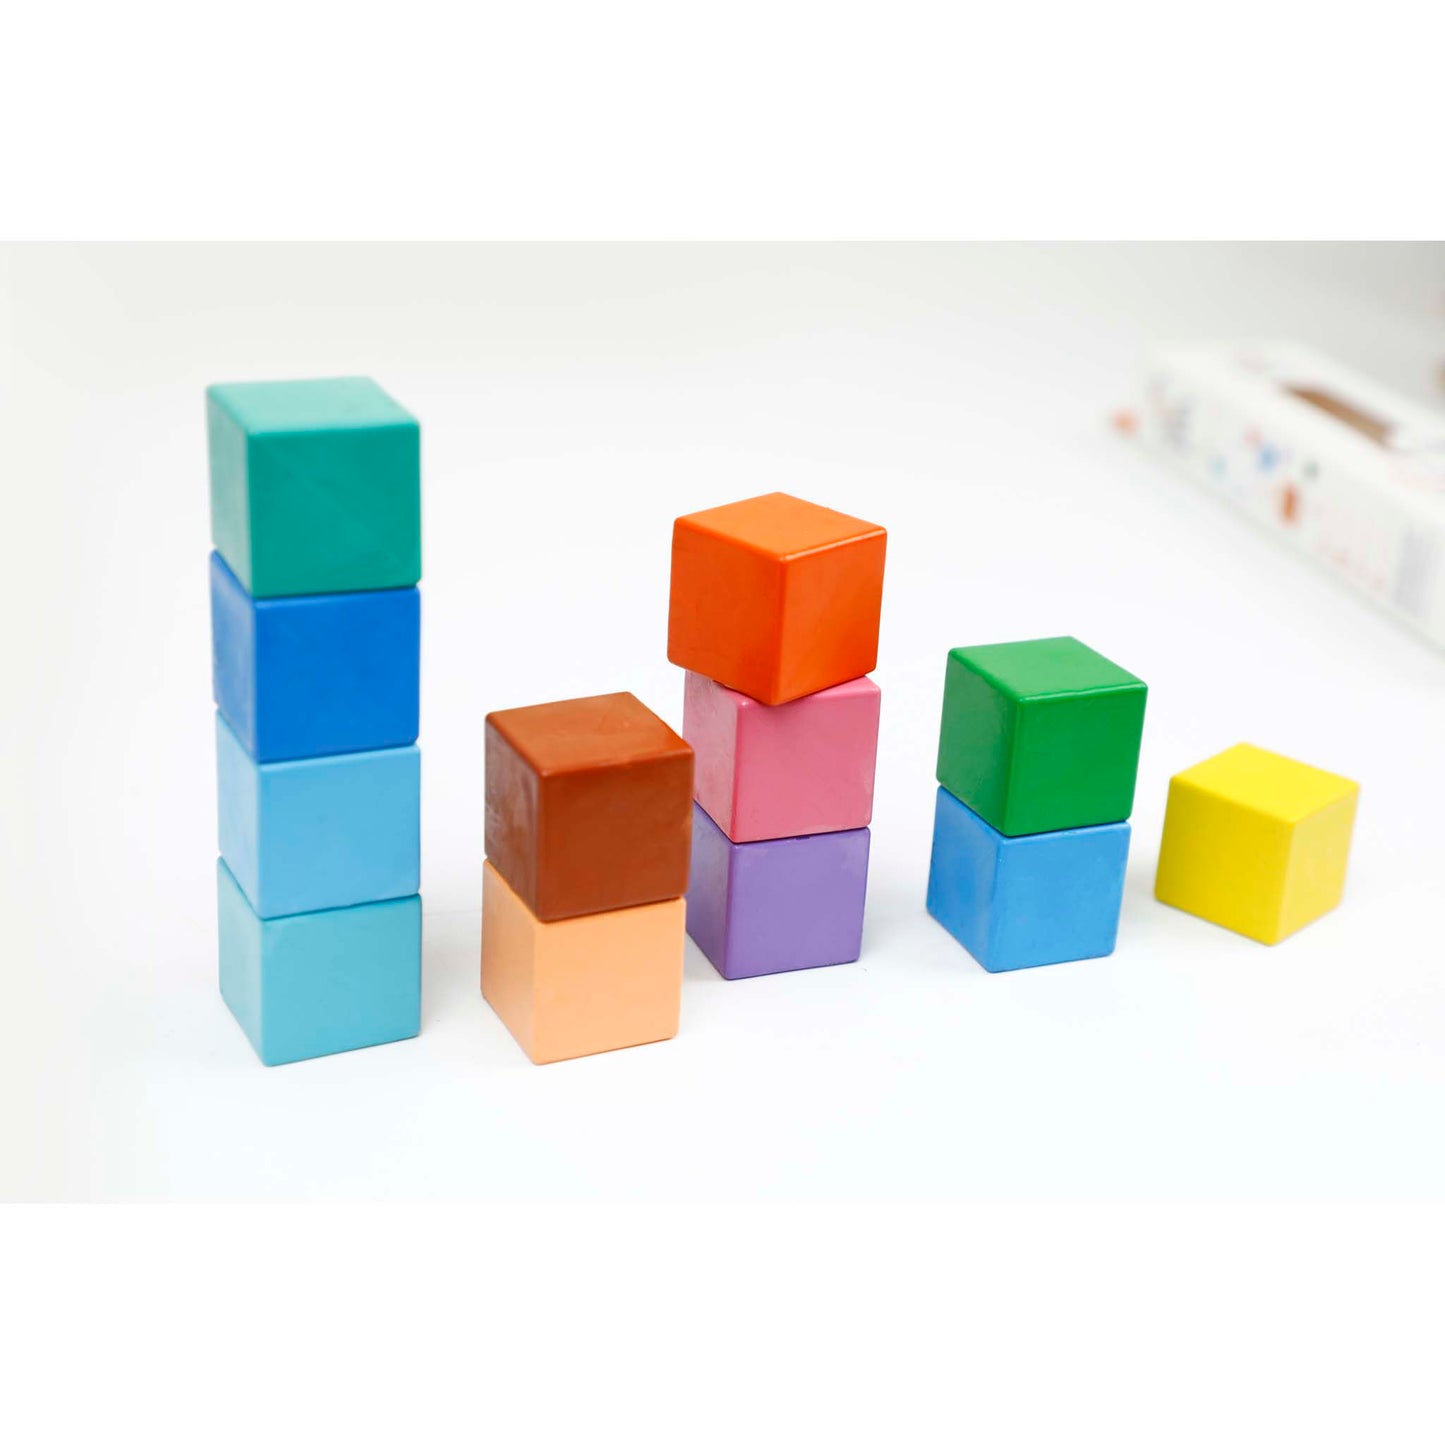 Haku Yoka 6 Cube Crayons Rainbow